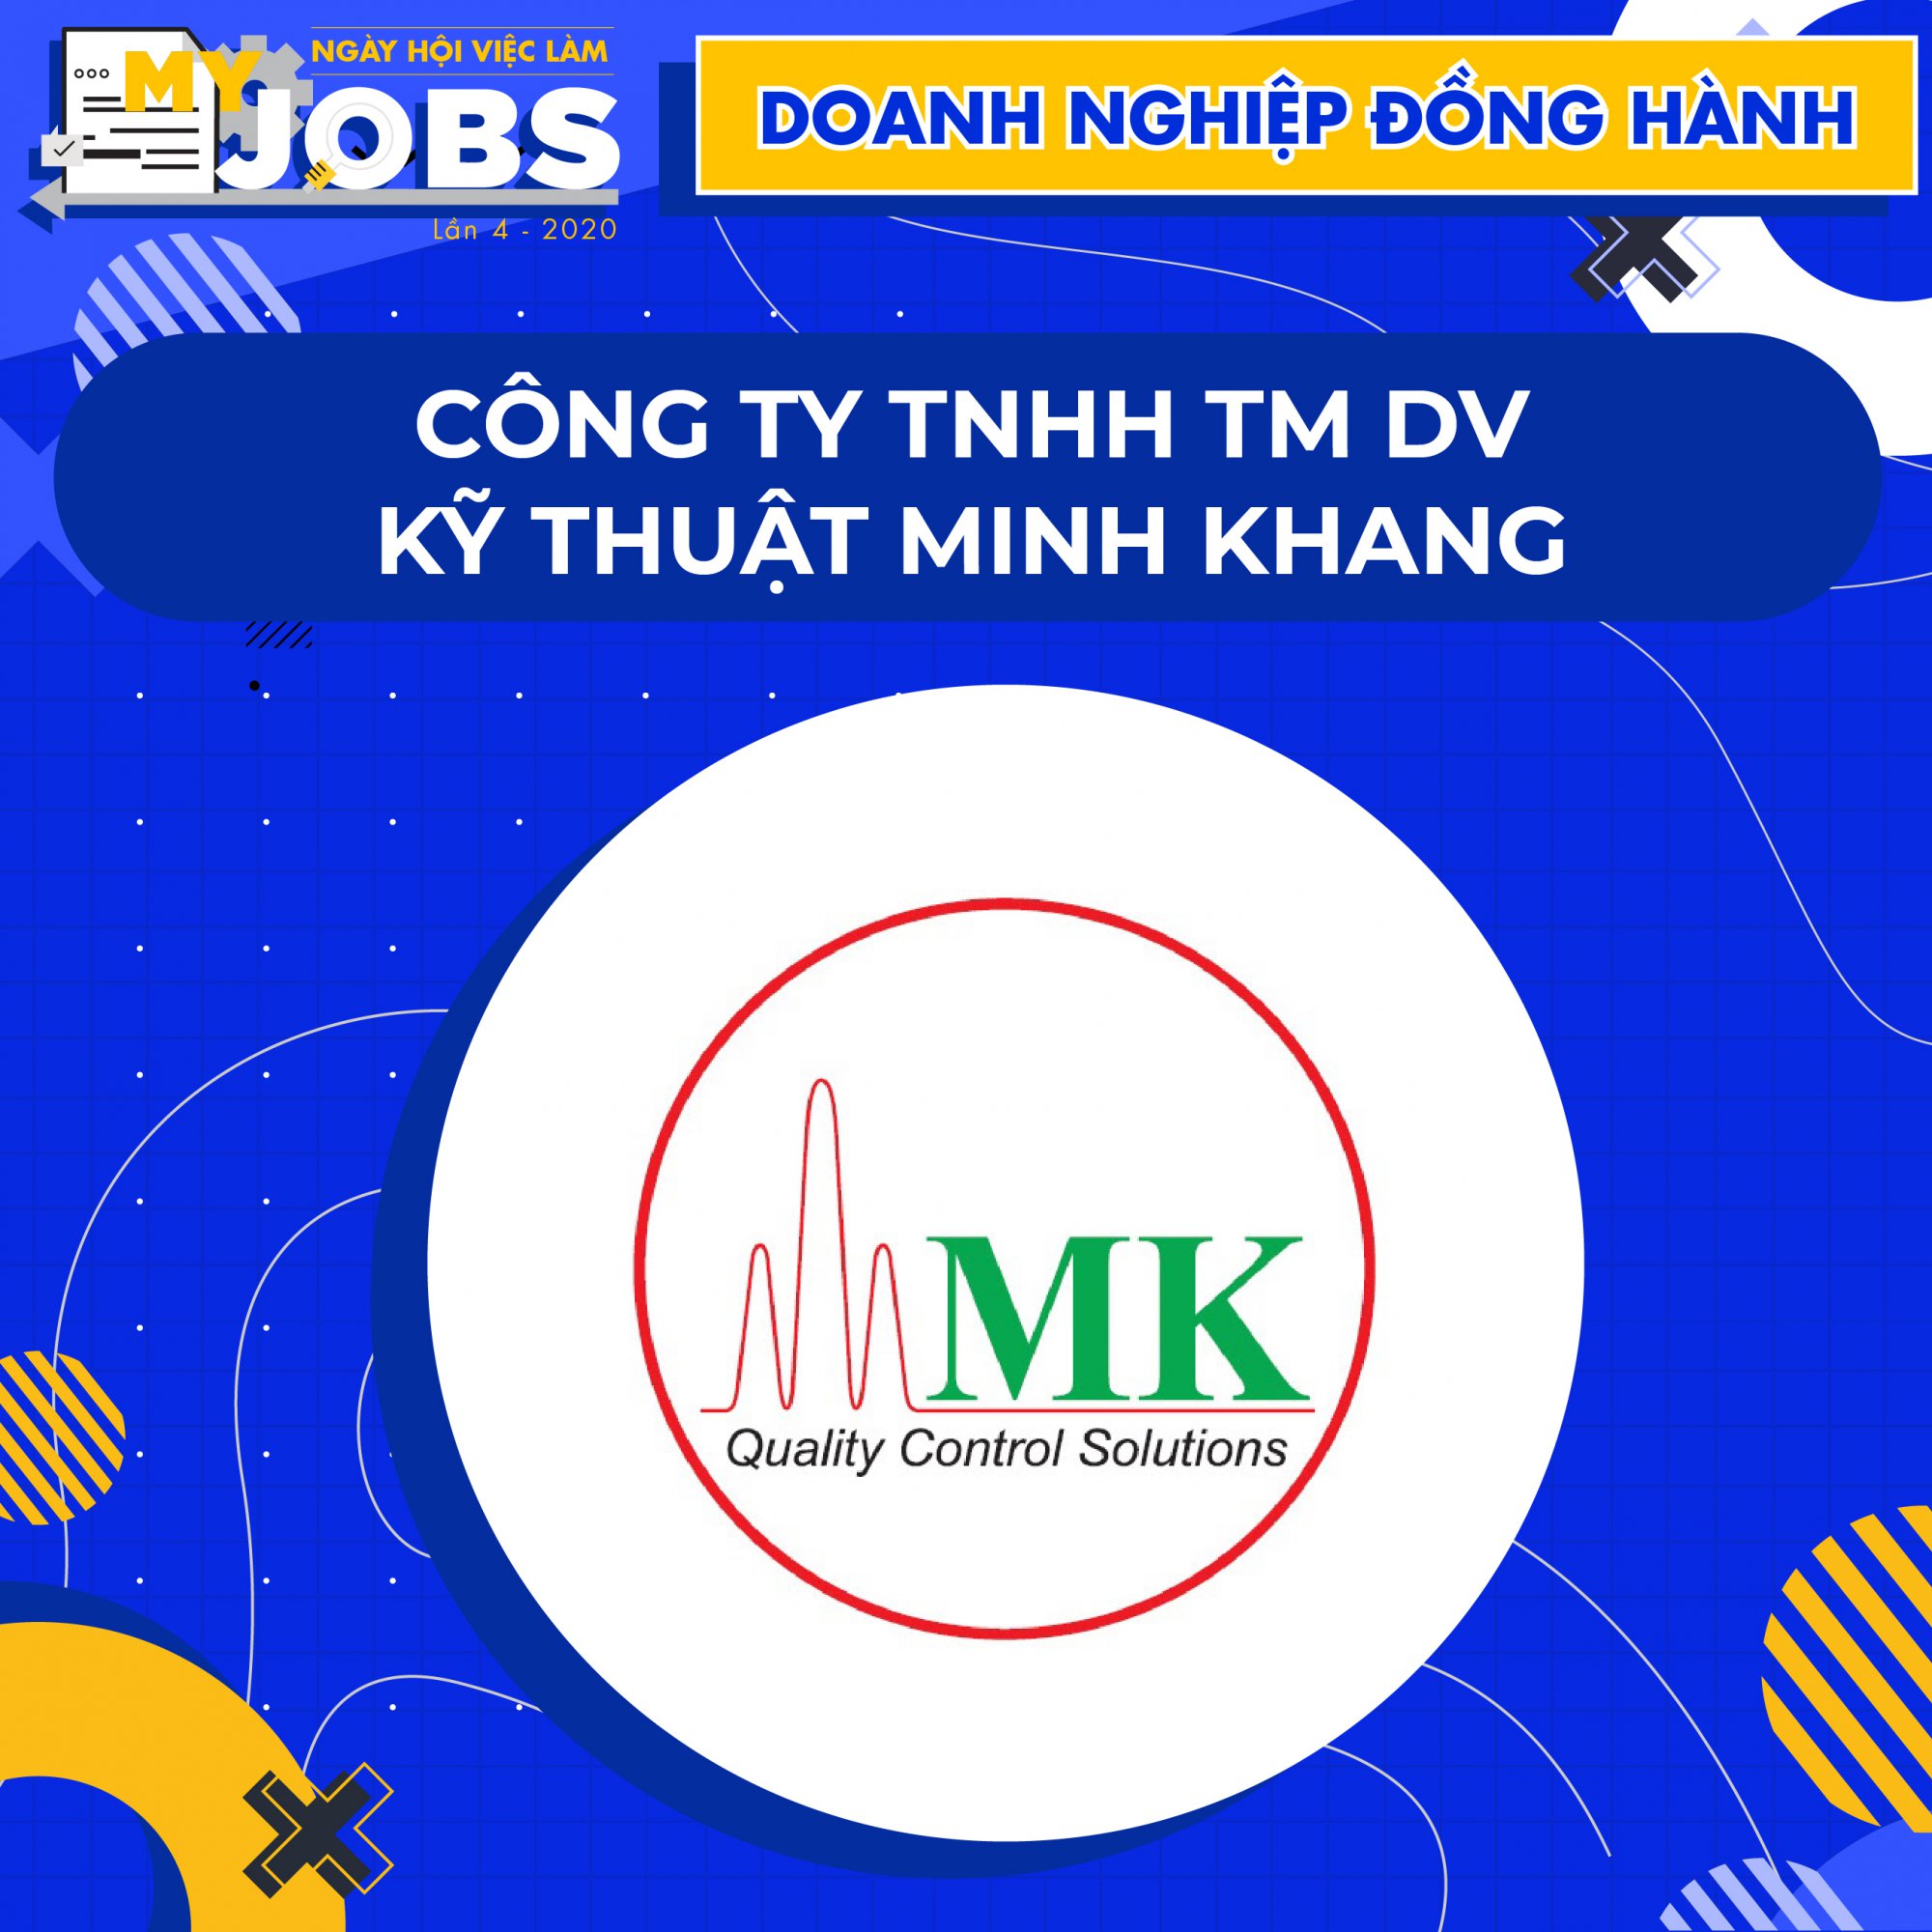 Công ty TNHH TMDV Kỹ thuật Minh Khang